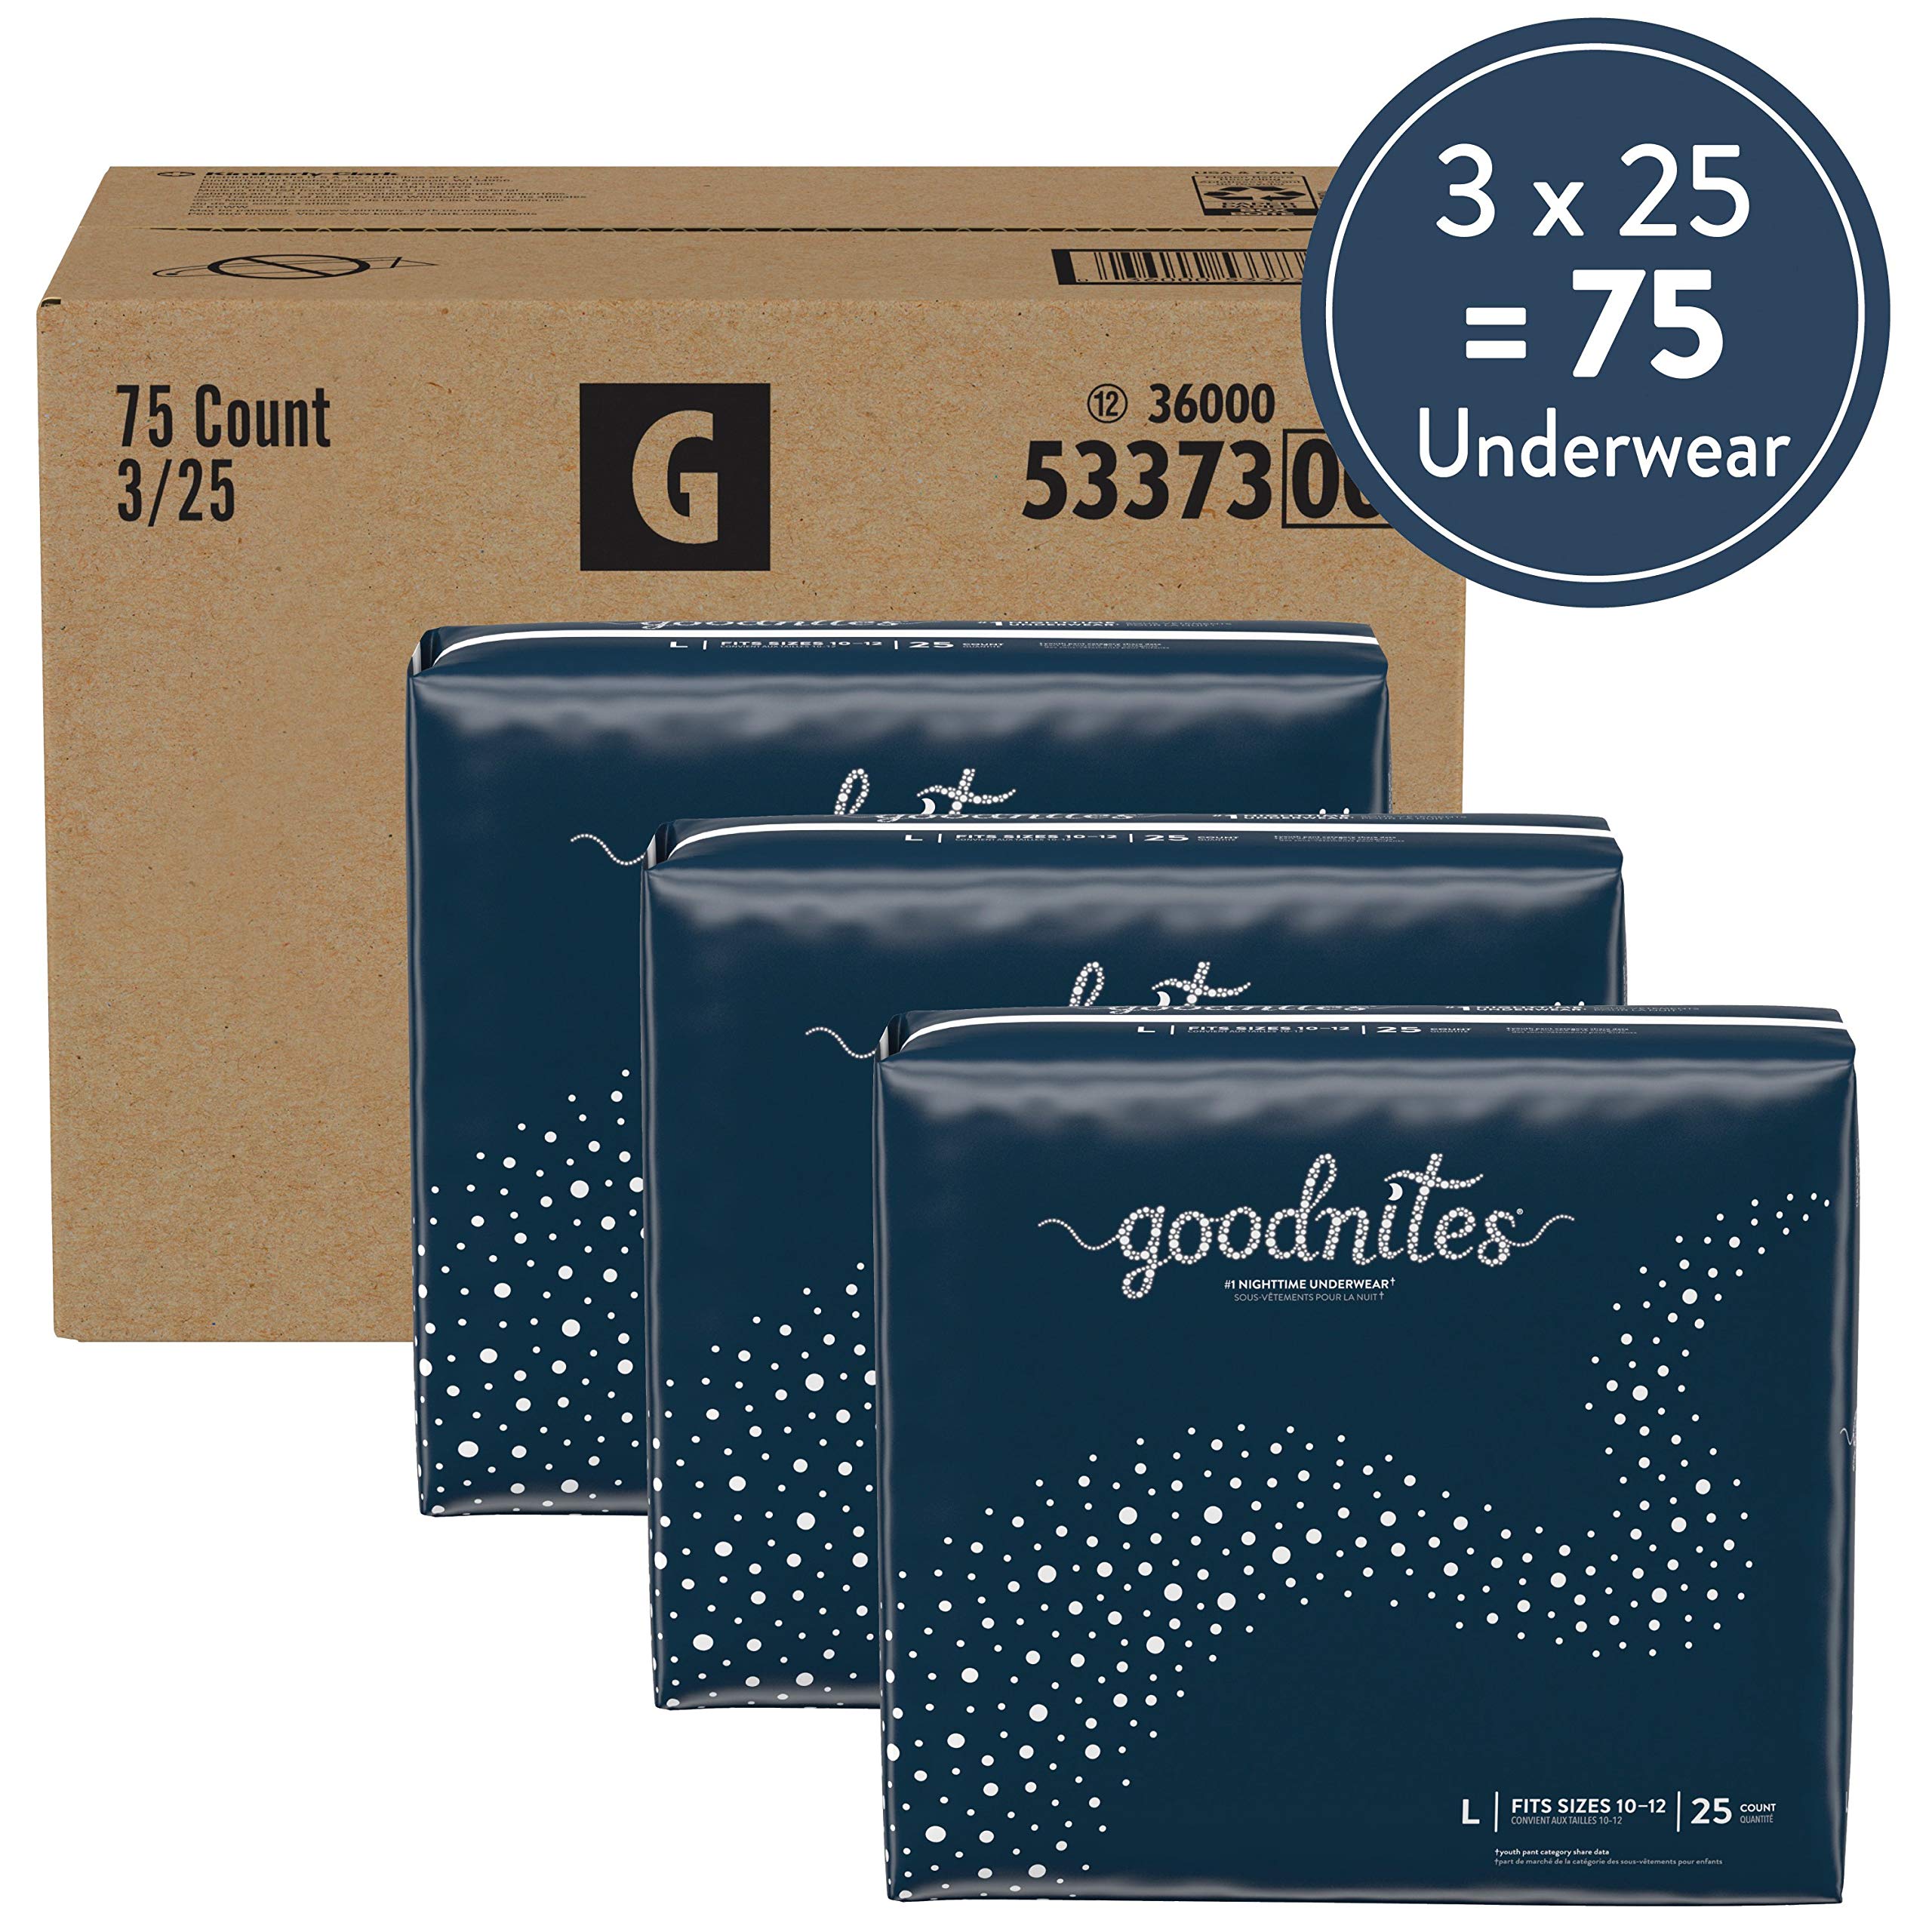 Goodnites Nighttime Bedwetting Underwear, Boys' L (68-95 lb.), 75ct, FSA/HSA-Eligible